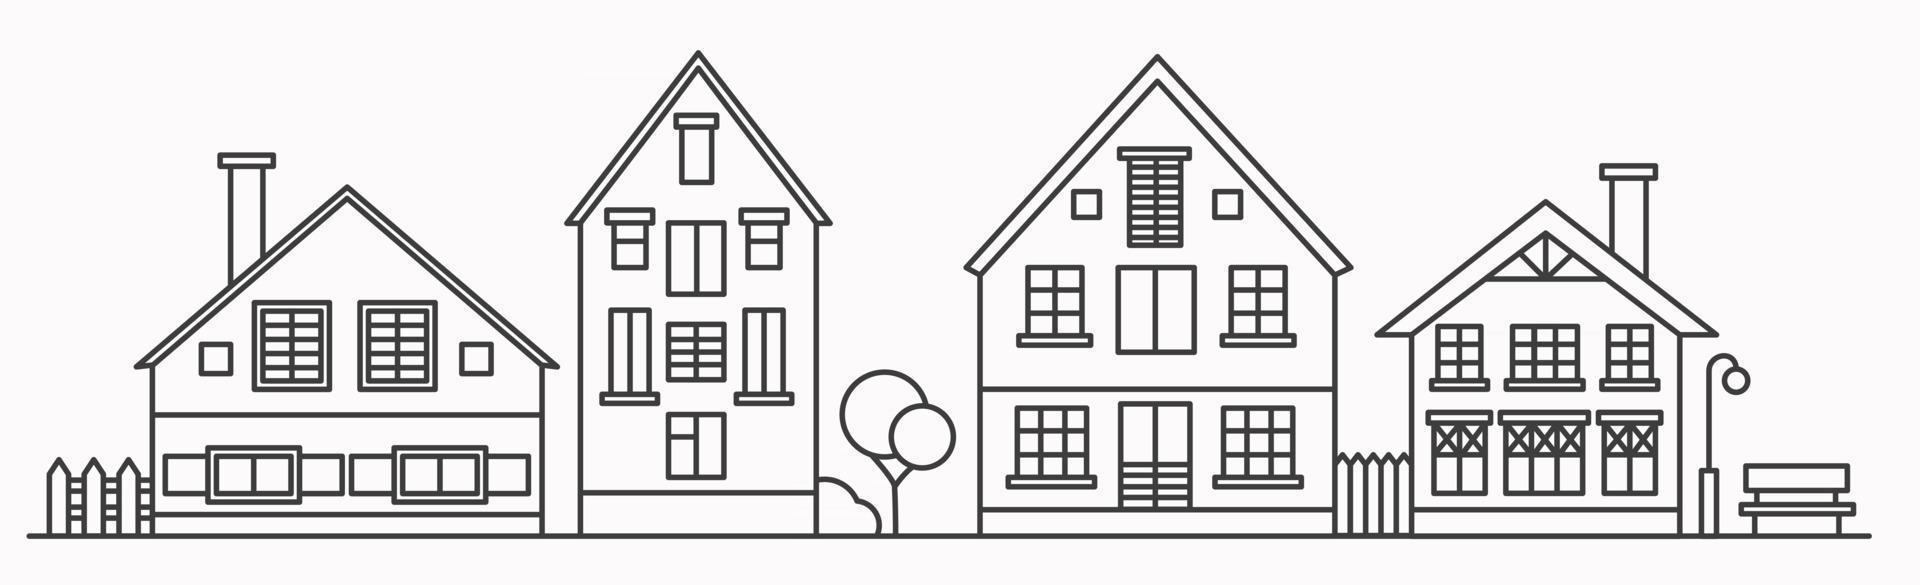 paisaje urbano lineal con varias casas en hilera. Ilustración de contorno. vector